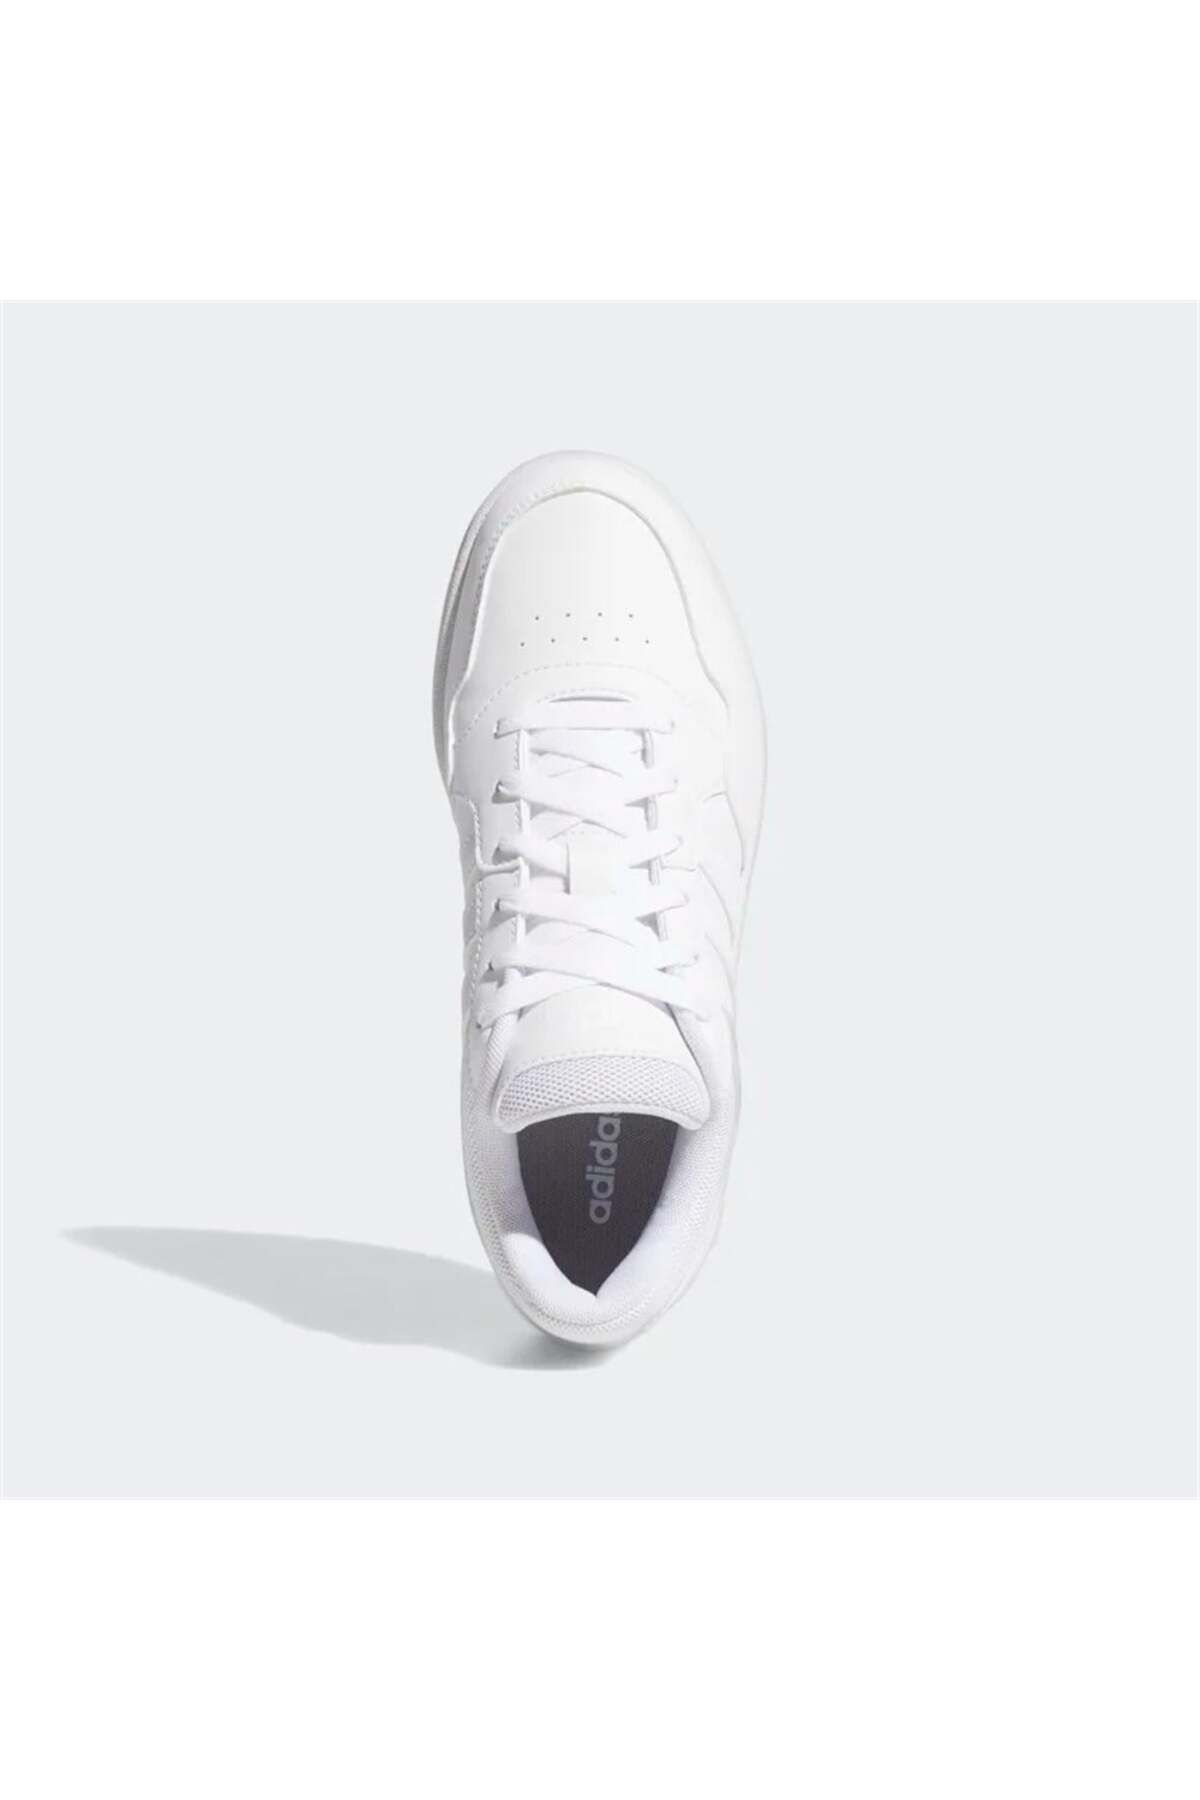 adidas Hoops 3.0 Kadın Basketbol Ayakkabı